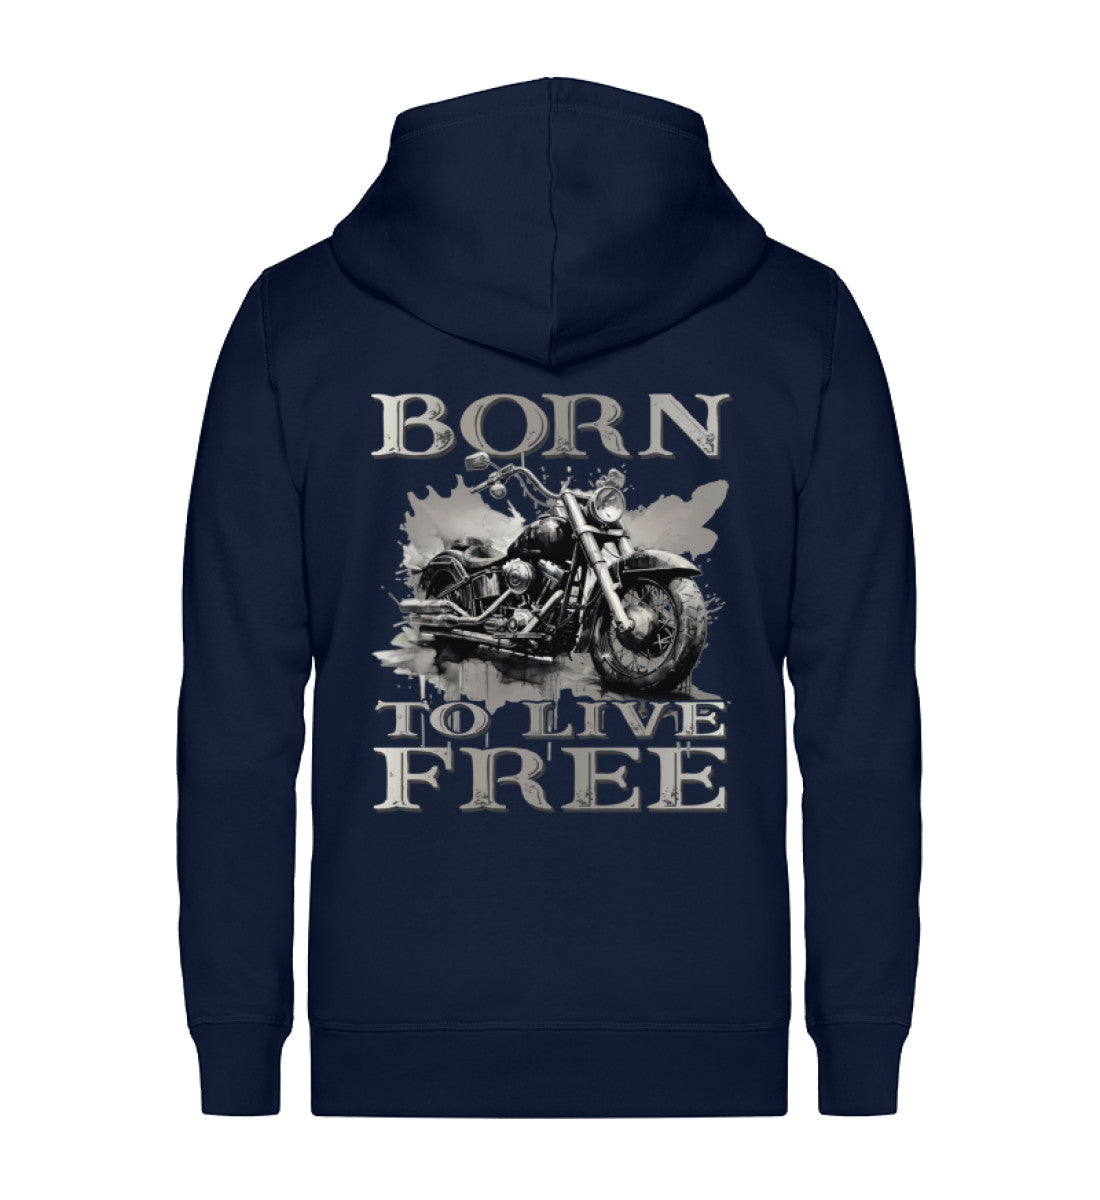 Ein Reißverschluss-Jacke für Motorradfahrer von Wingbikers mit dem Aufdruck,  Born to Live Free, in navy blau.  